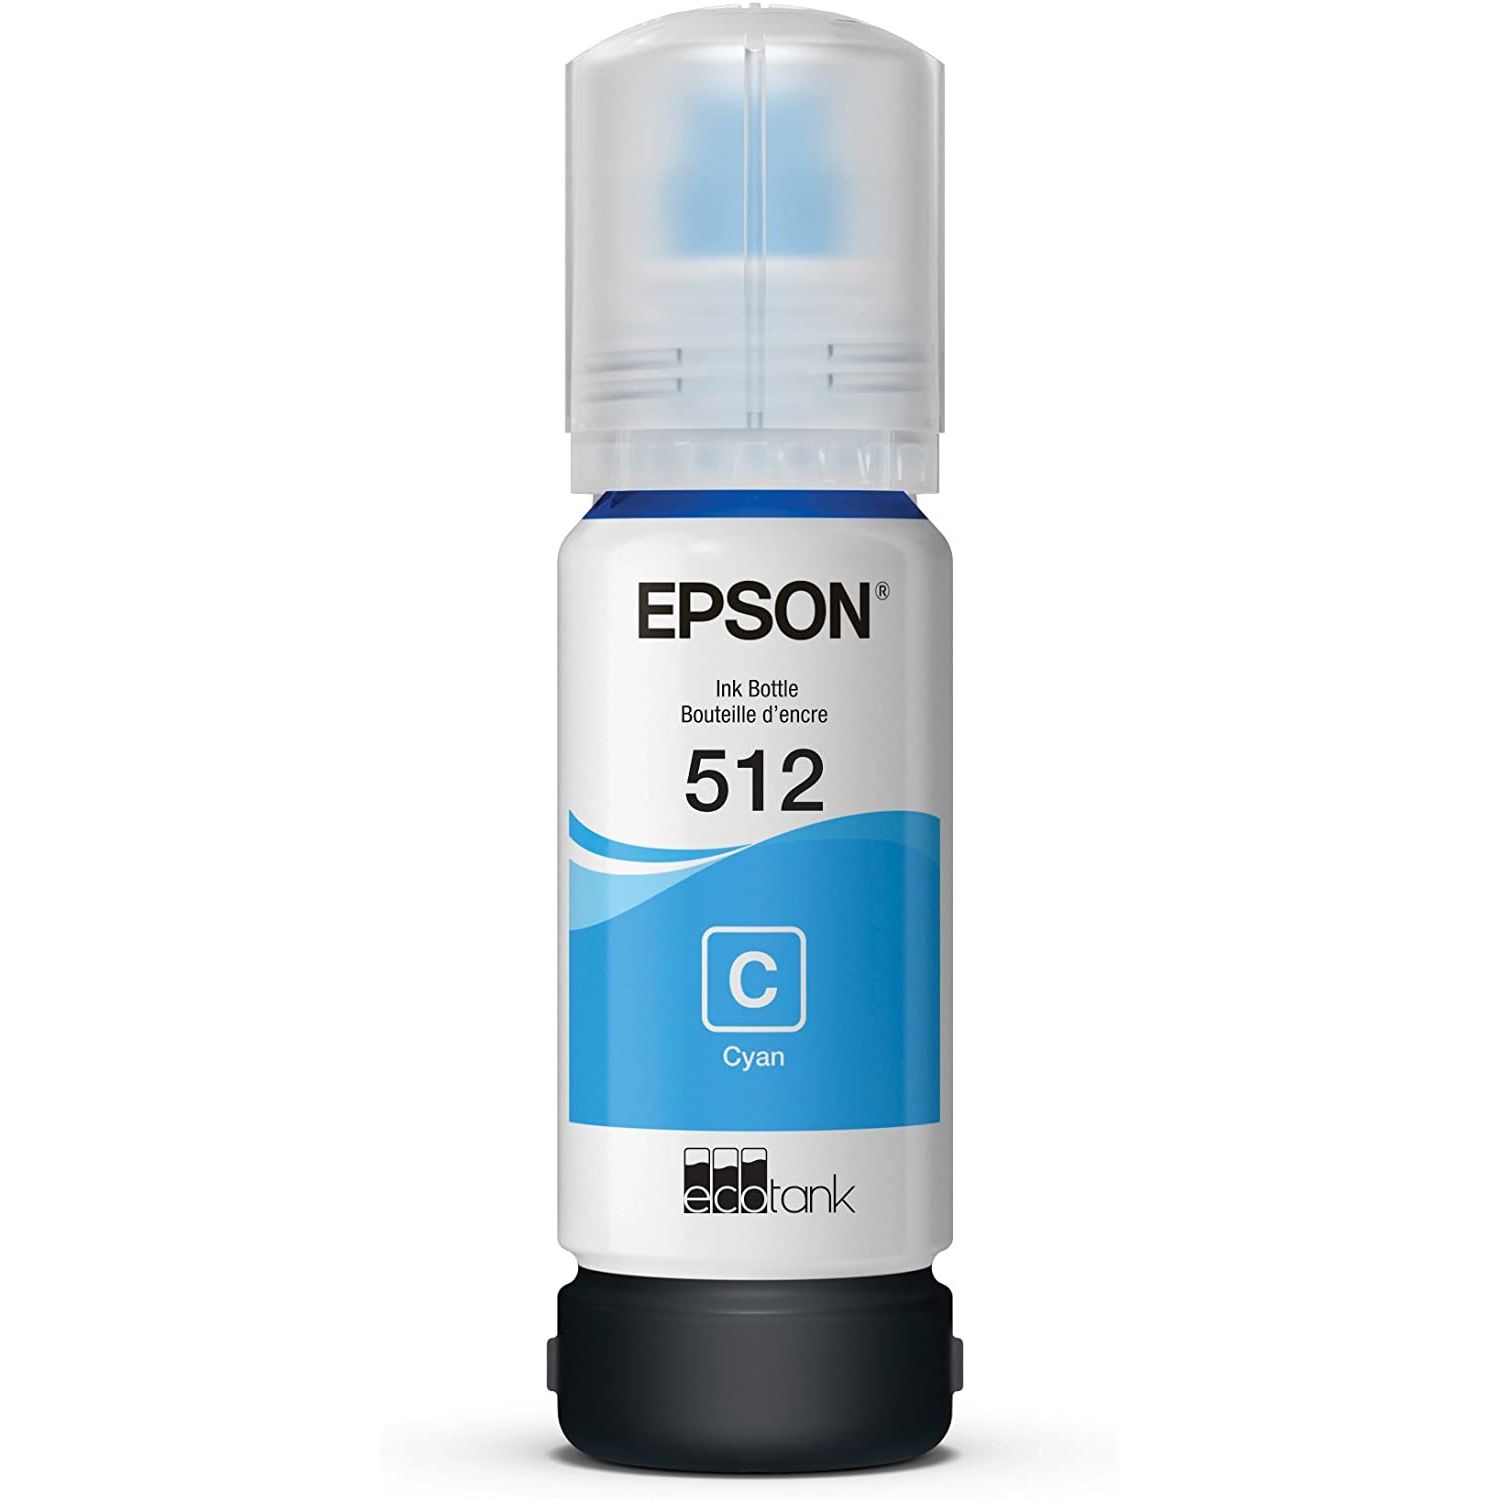 Epson 512 EcoTank Auto-Stop Ink Bottle, Cyan (T512220)